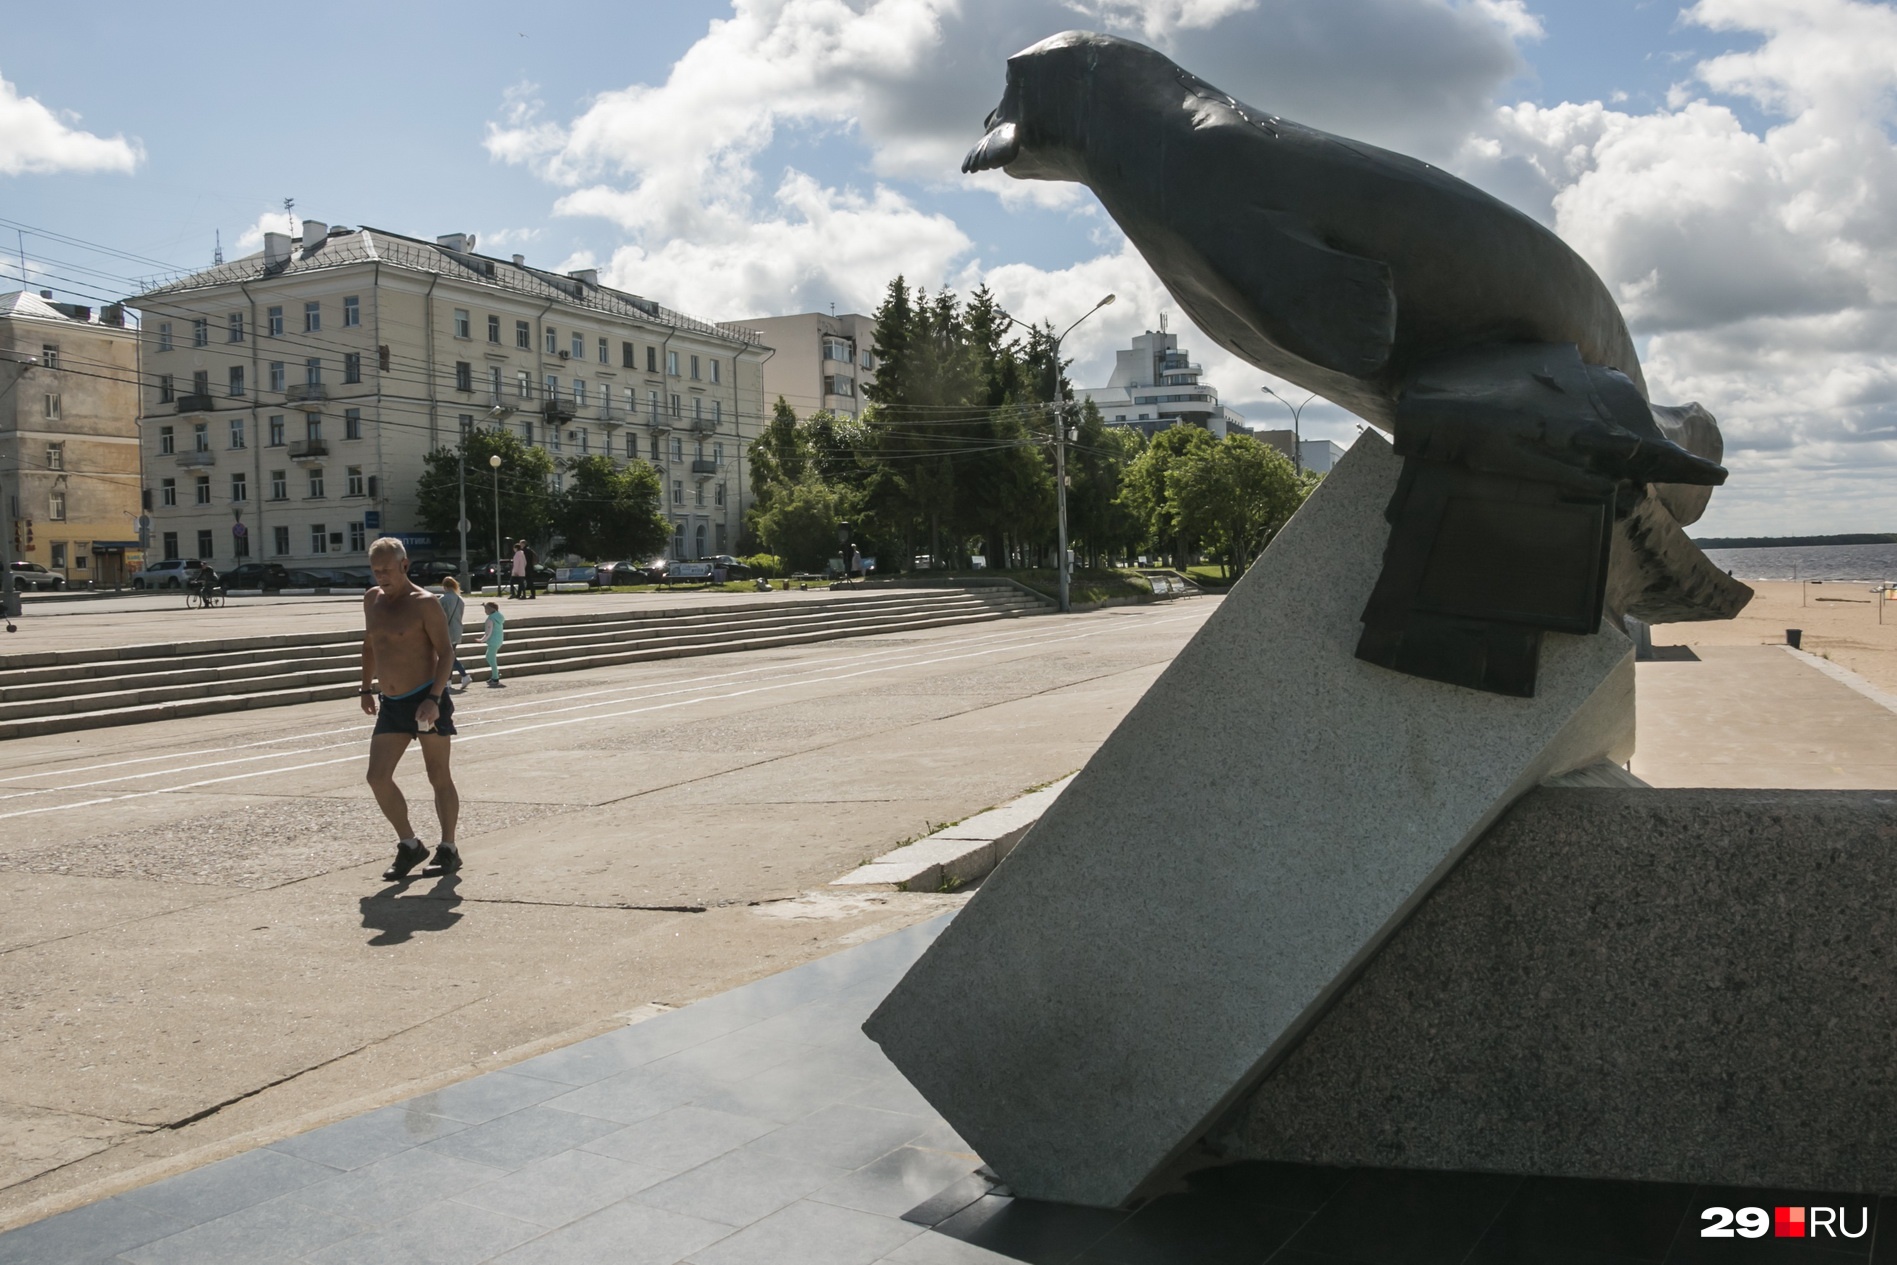 Вот так в городе воинской славы, Архангельске, уживаются военные памятники и мирные, пусть еще и с ограничениями, будни